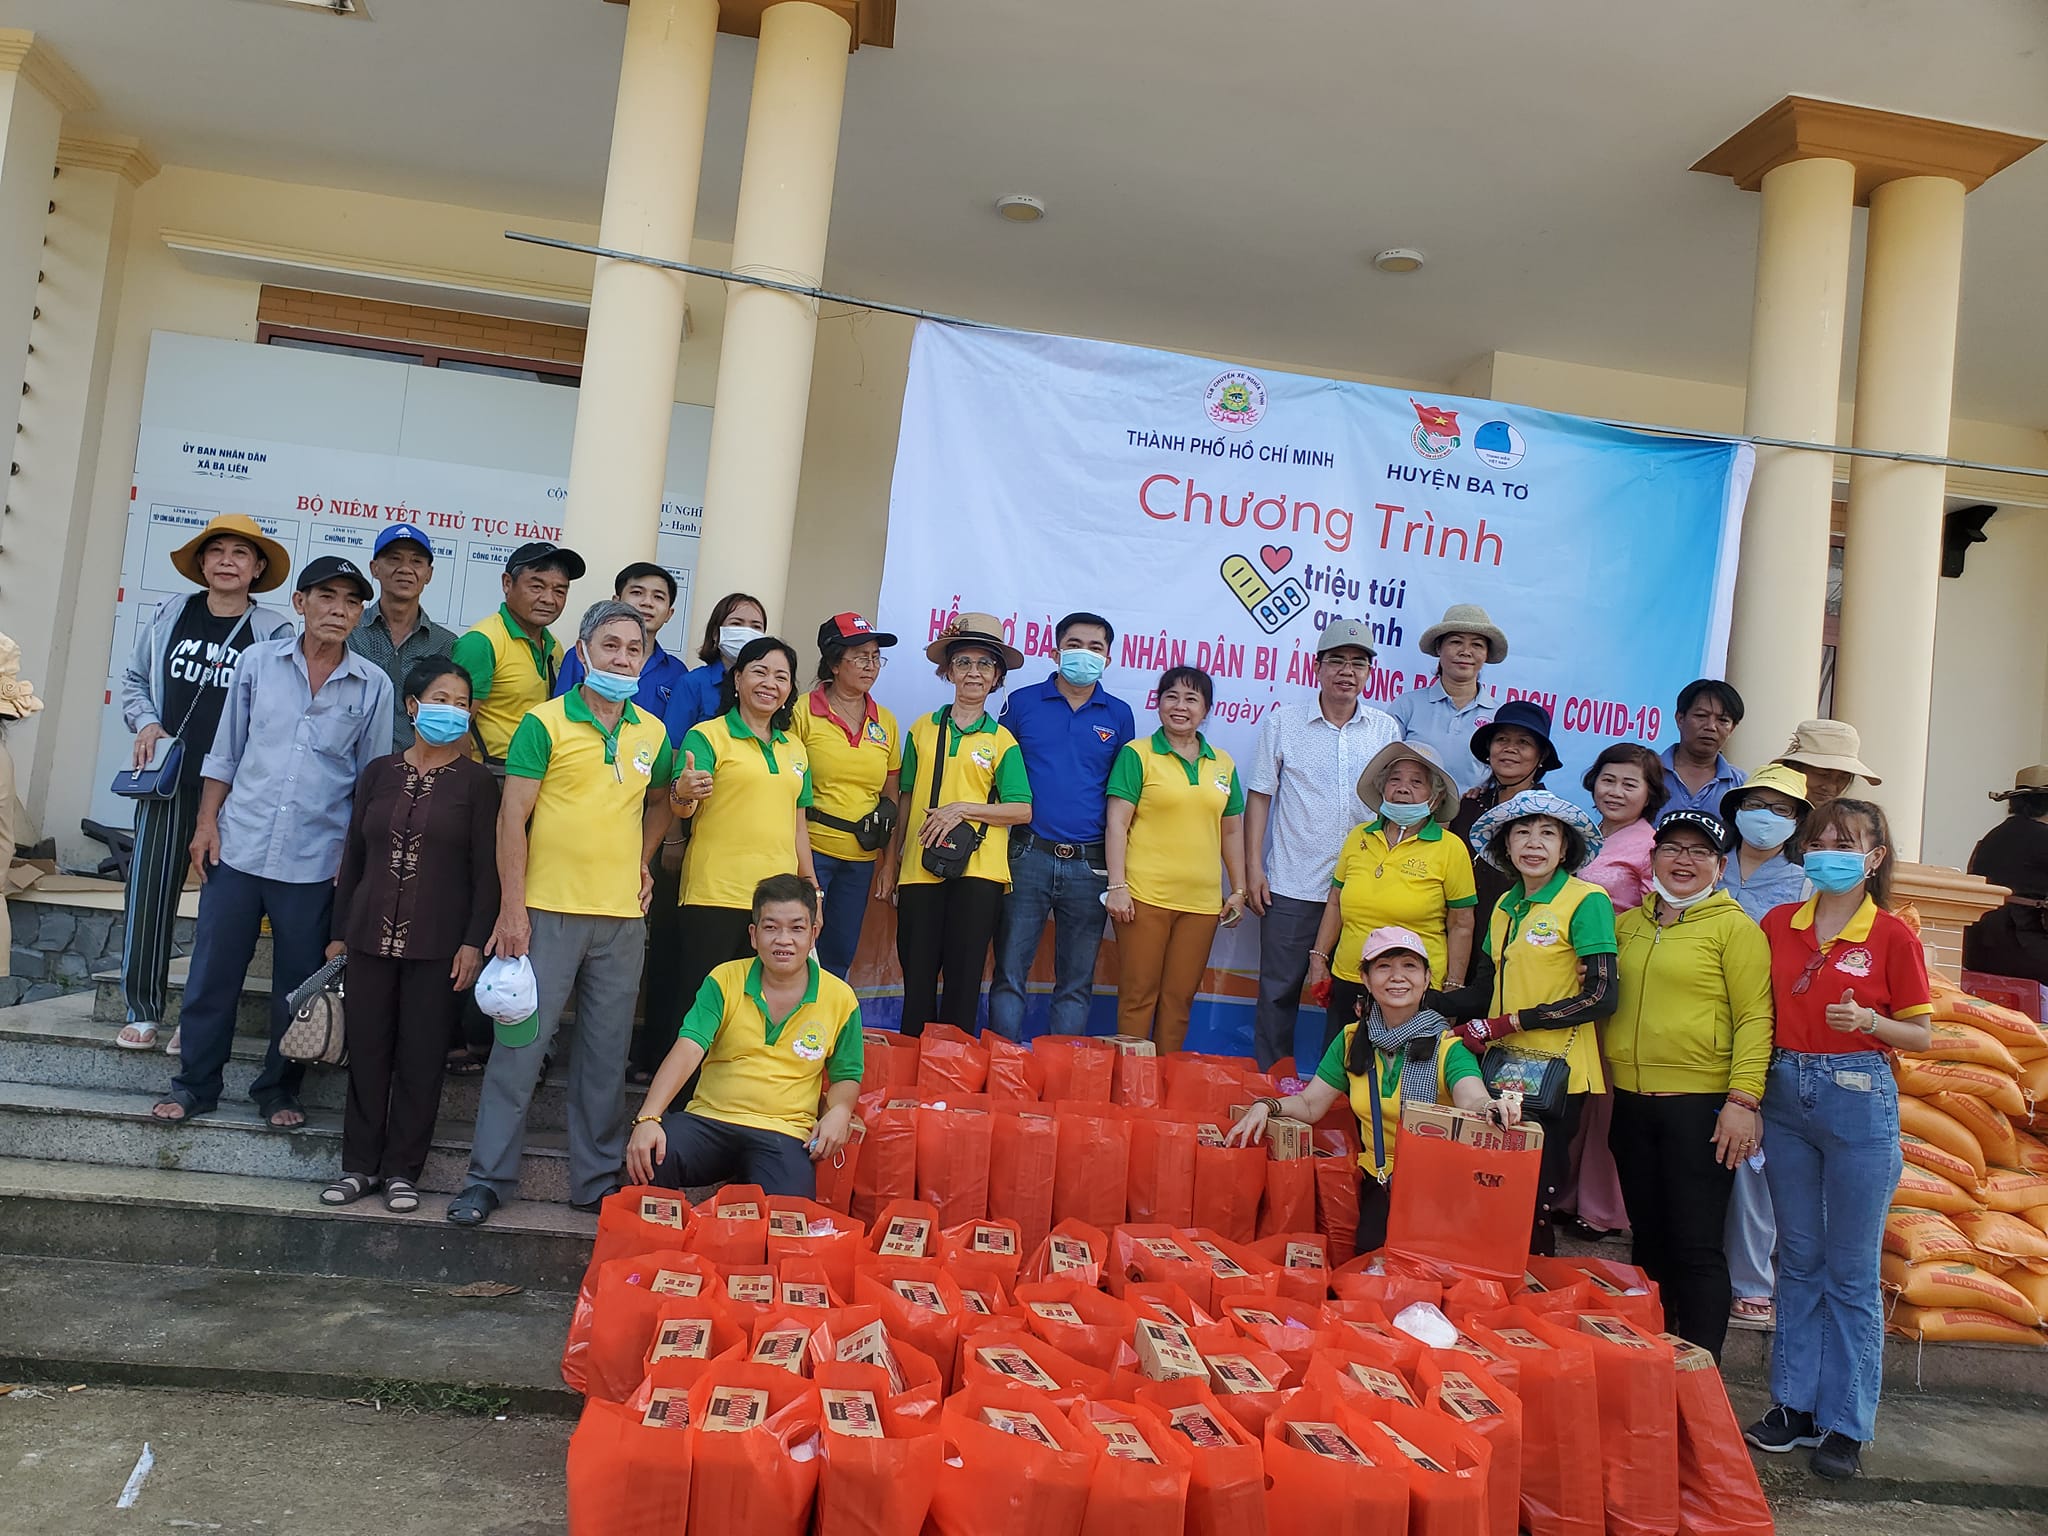 Huyện Đoàn – Hội Liên hiệp thanh niên Việt Nam huyện Ba Tơ phối hợp tổ chức chương trình triệu túi an sinh năm 2022